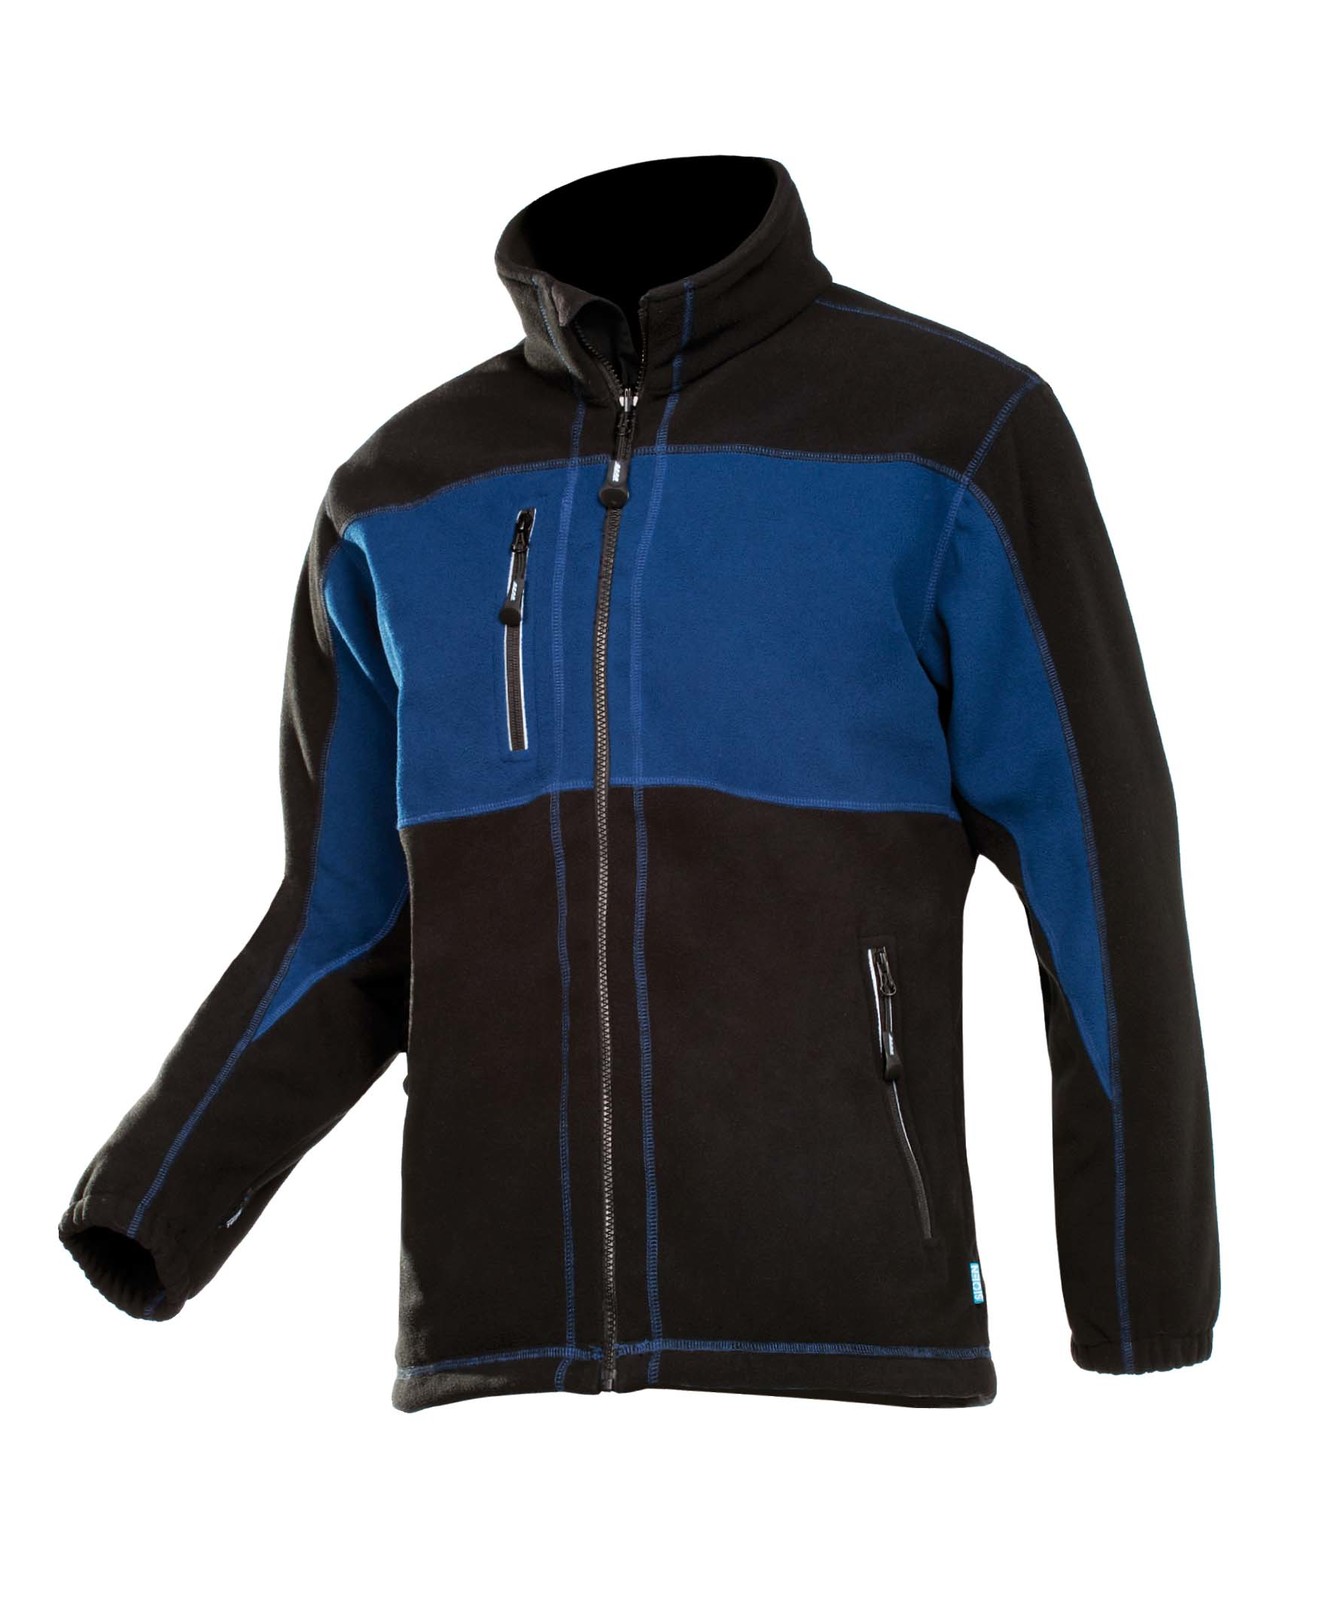 Fleece bunda Durango pánska - veľkosť: XXL, farba: modrá/čierna